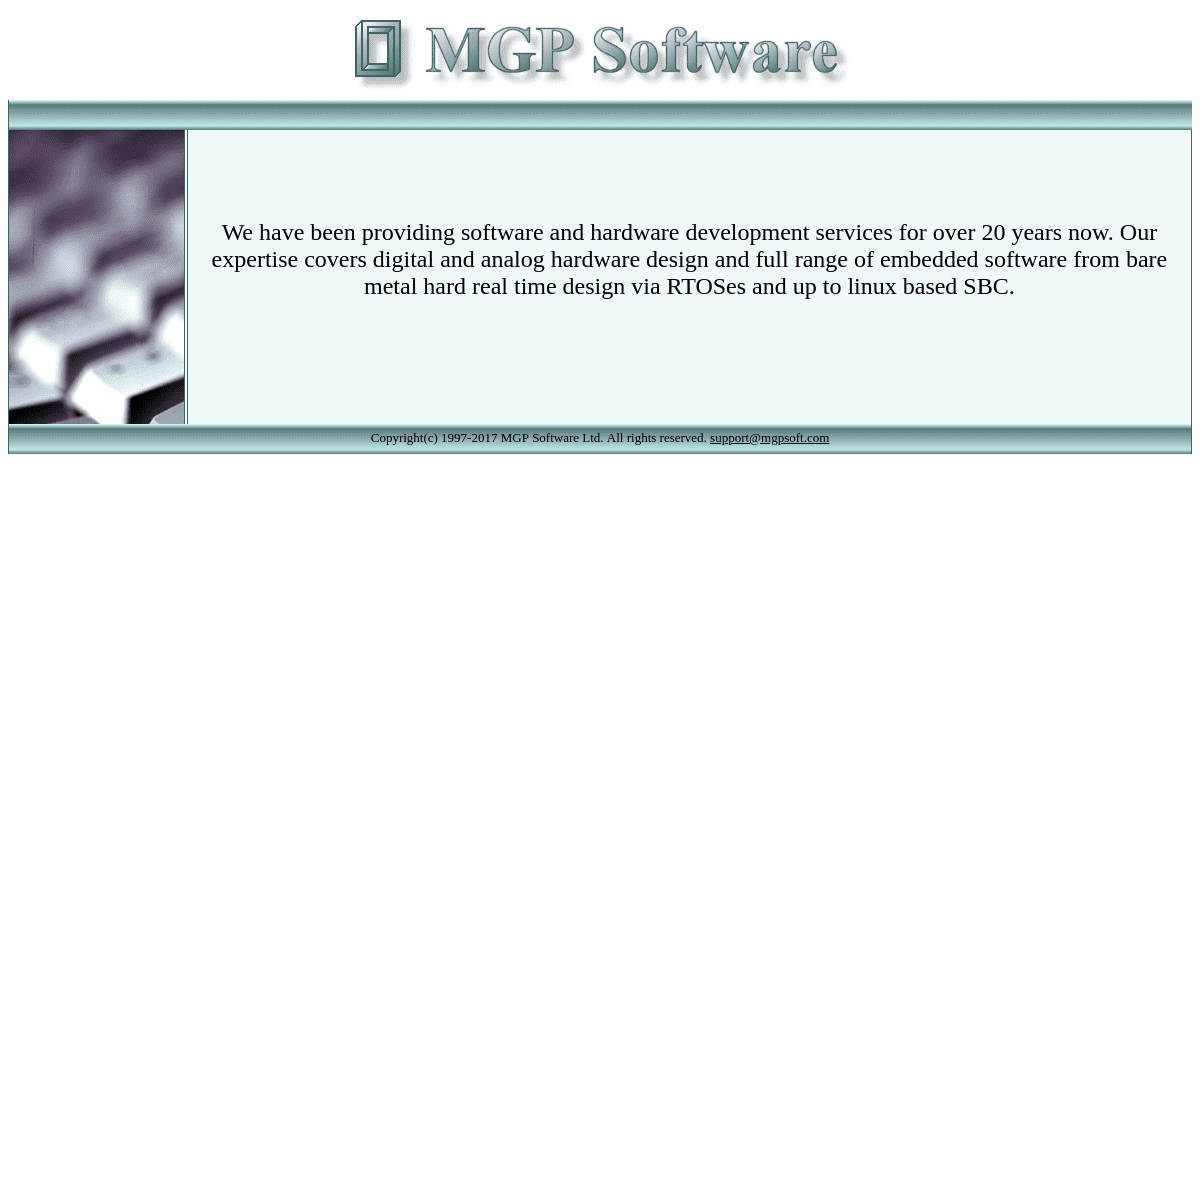  MGP Software